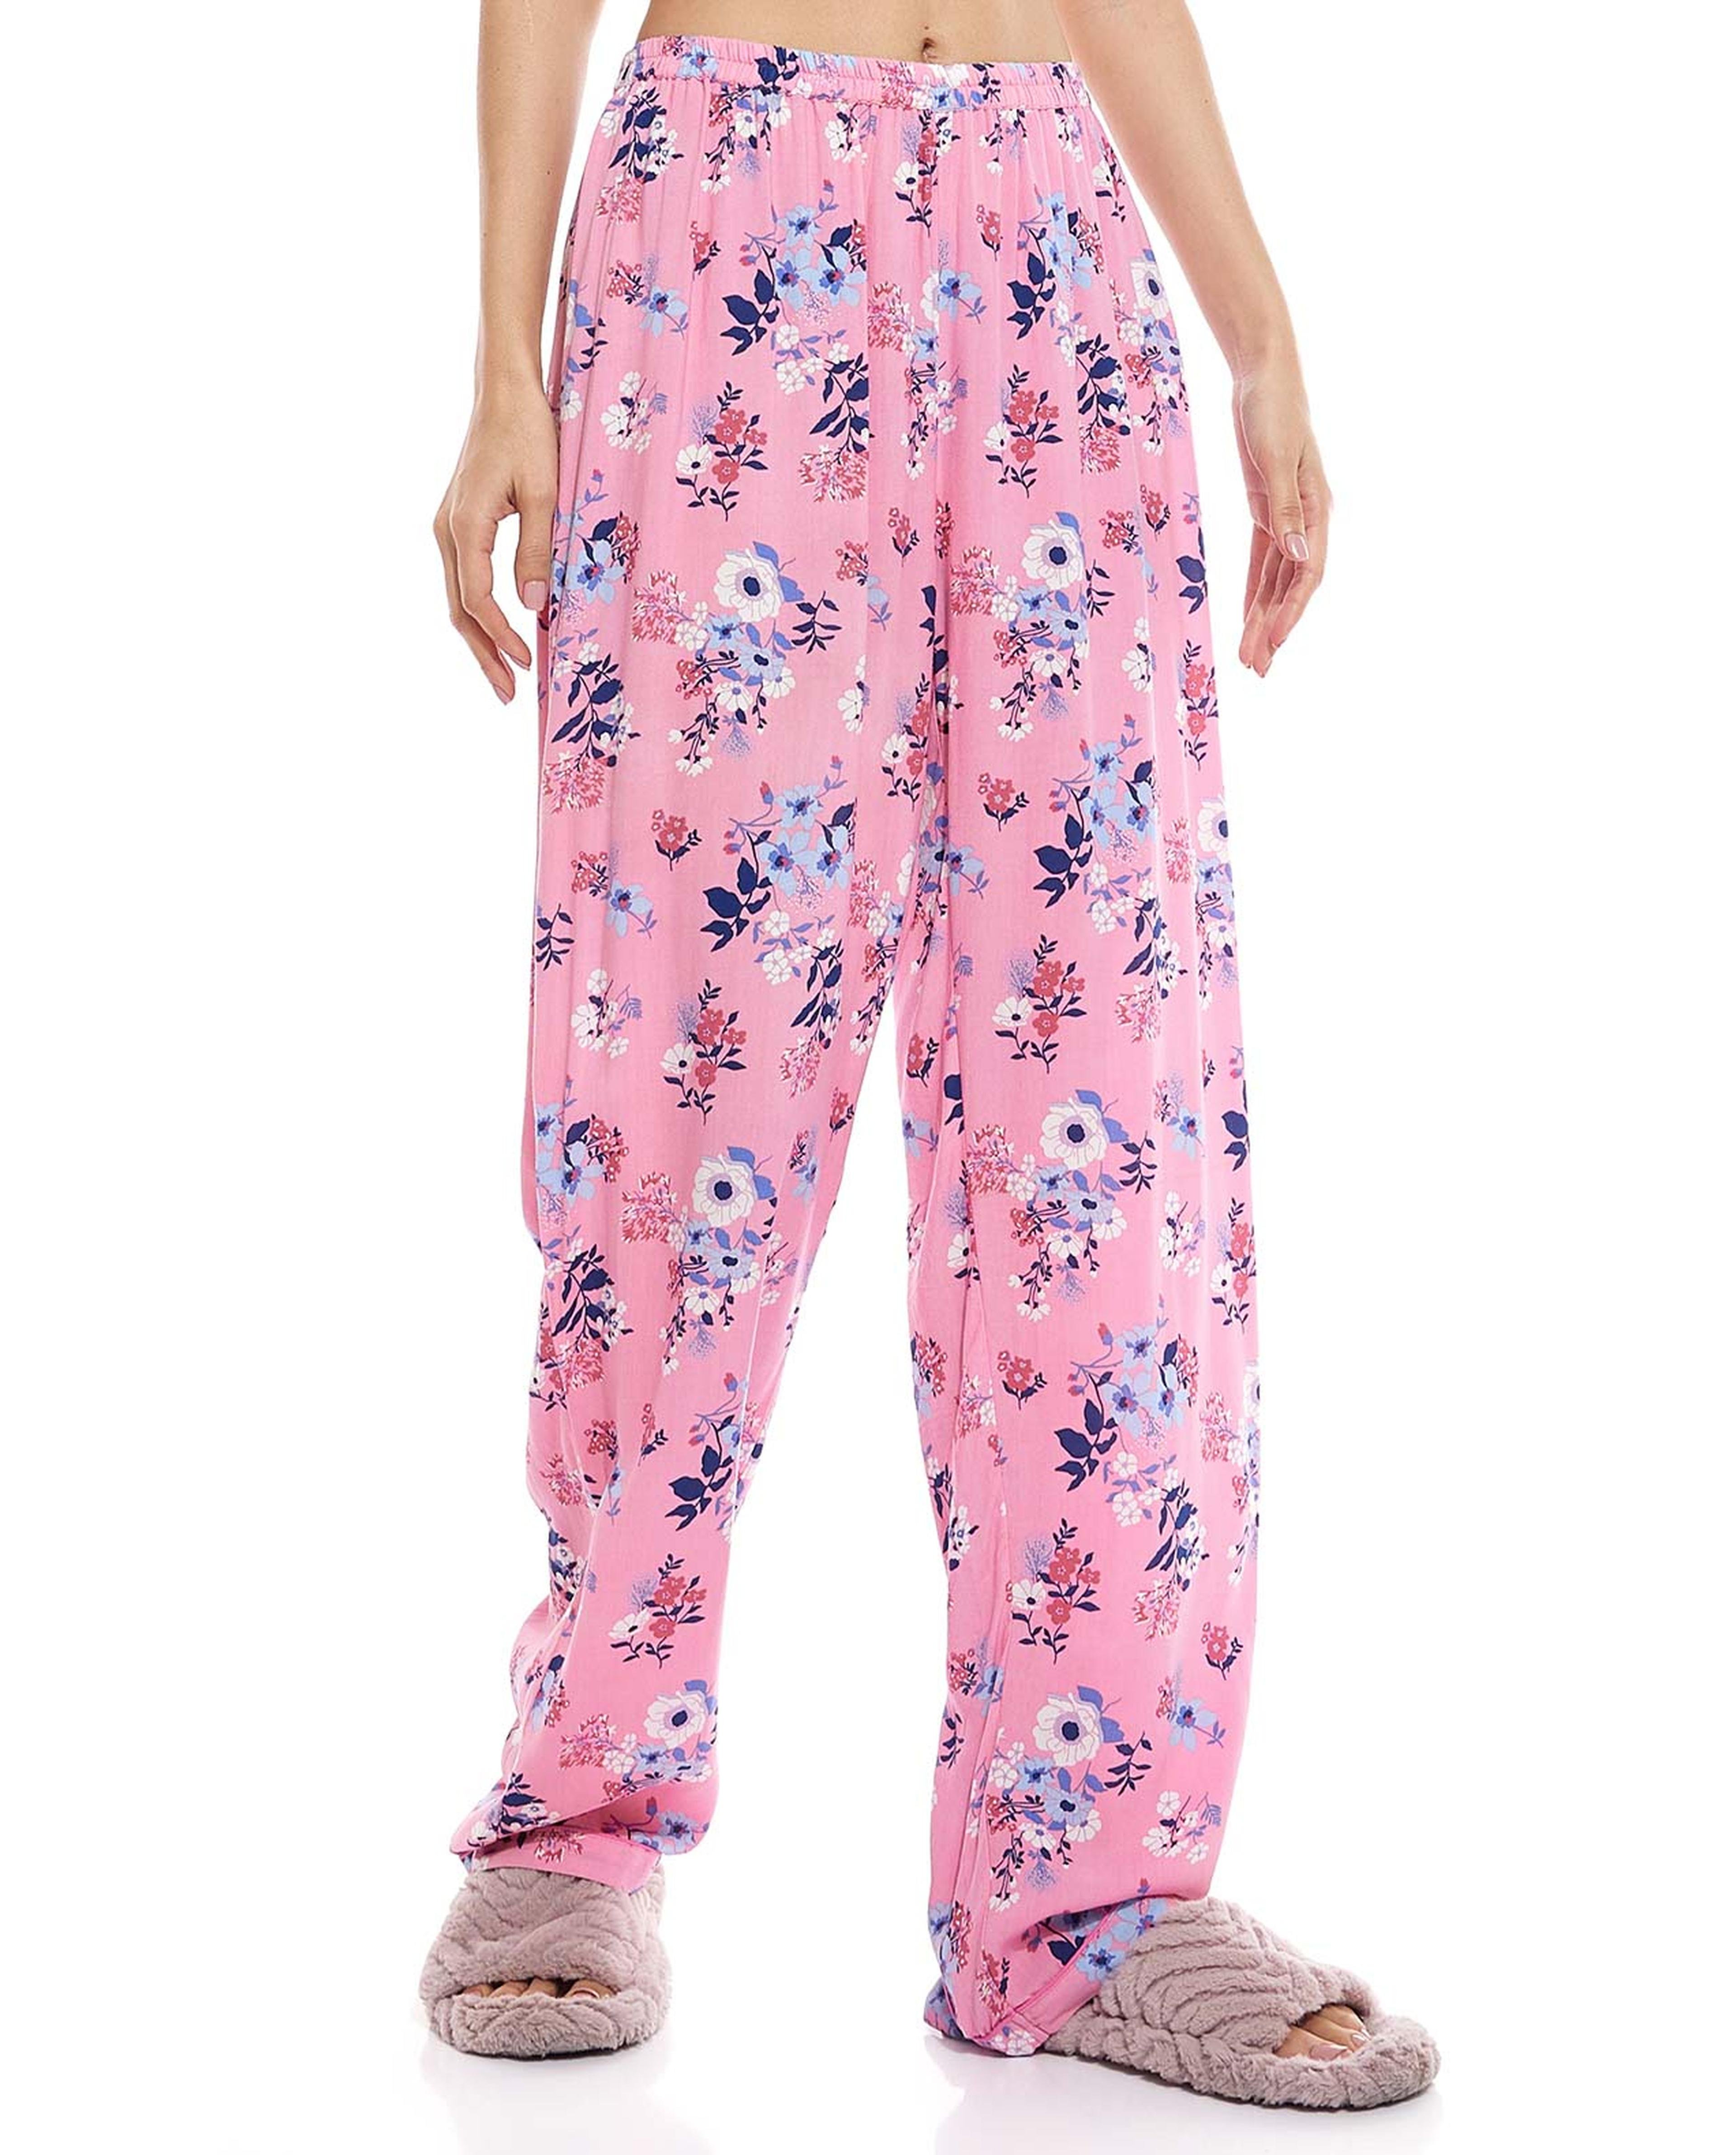 Floral Print Lapel Collar Pyjama Set